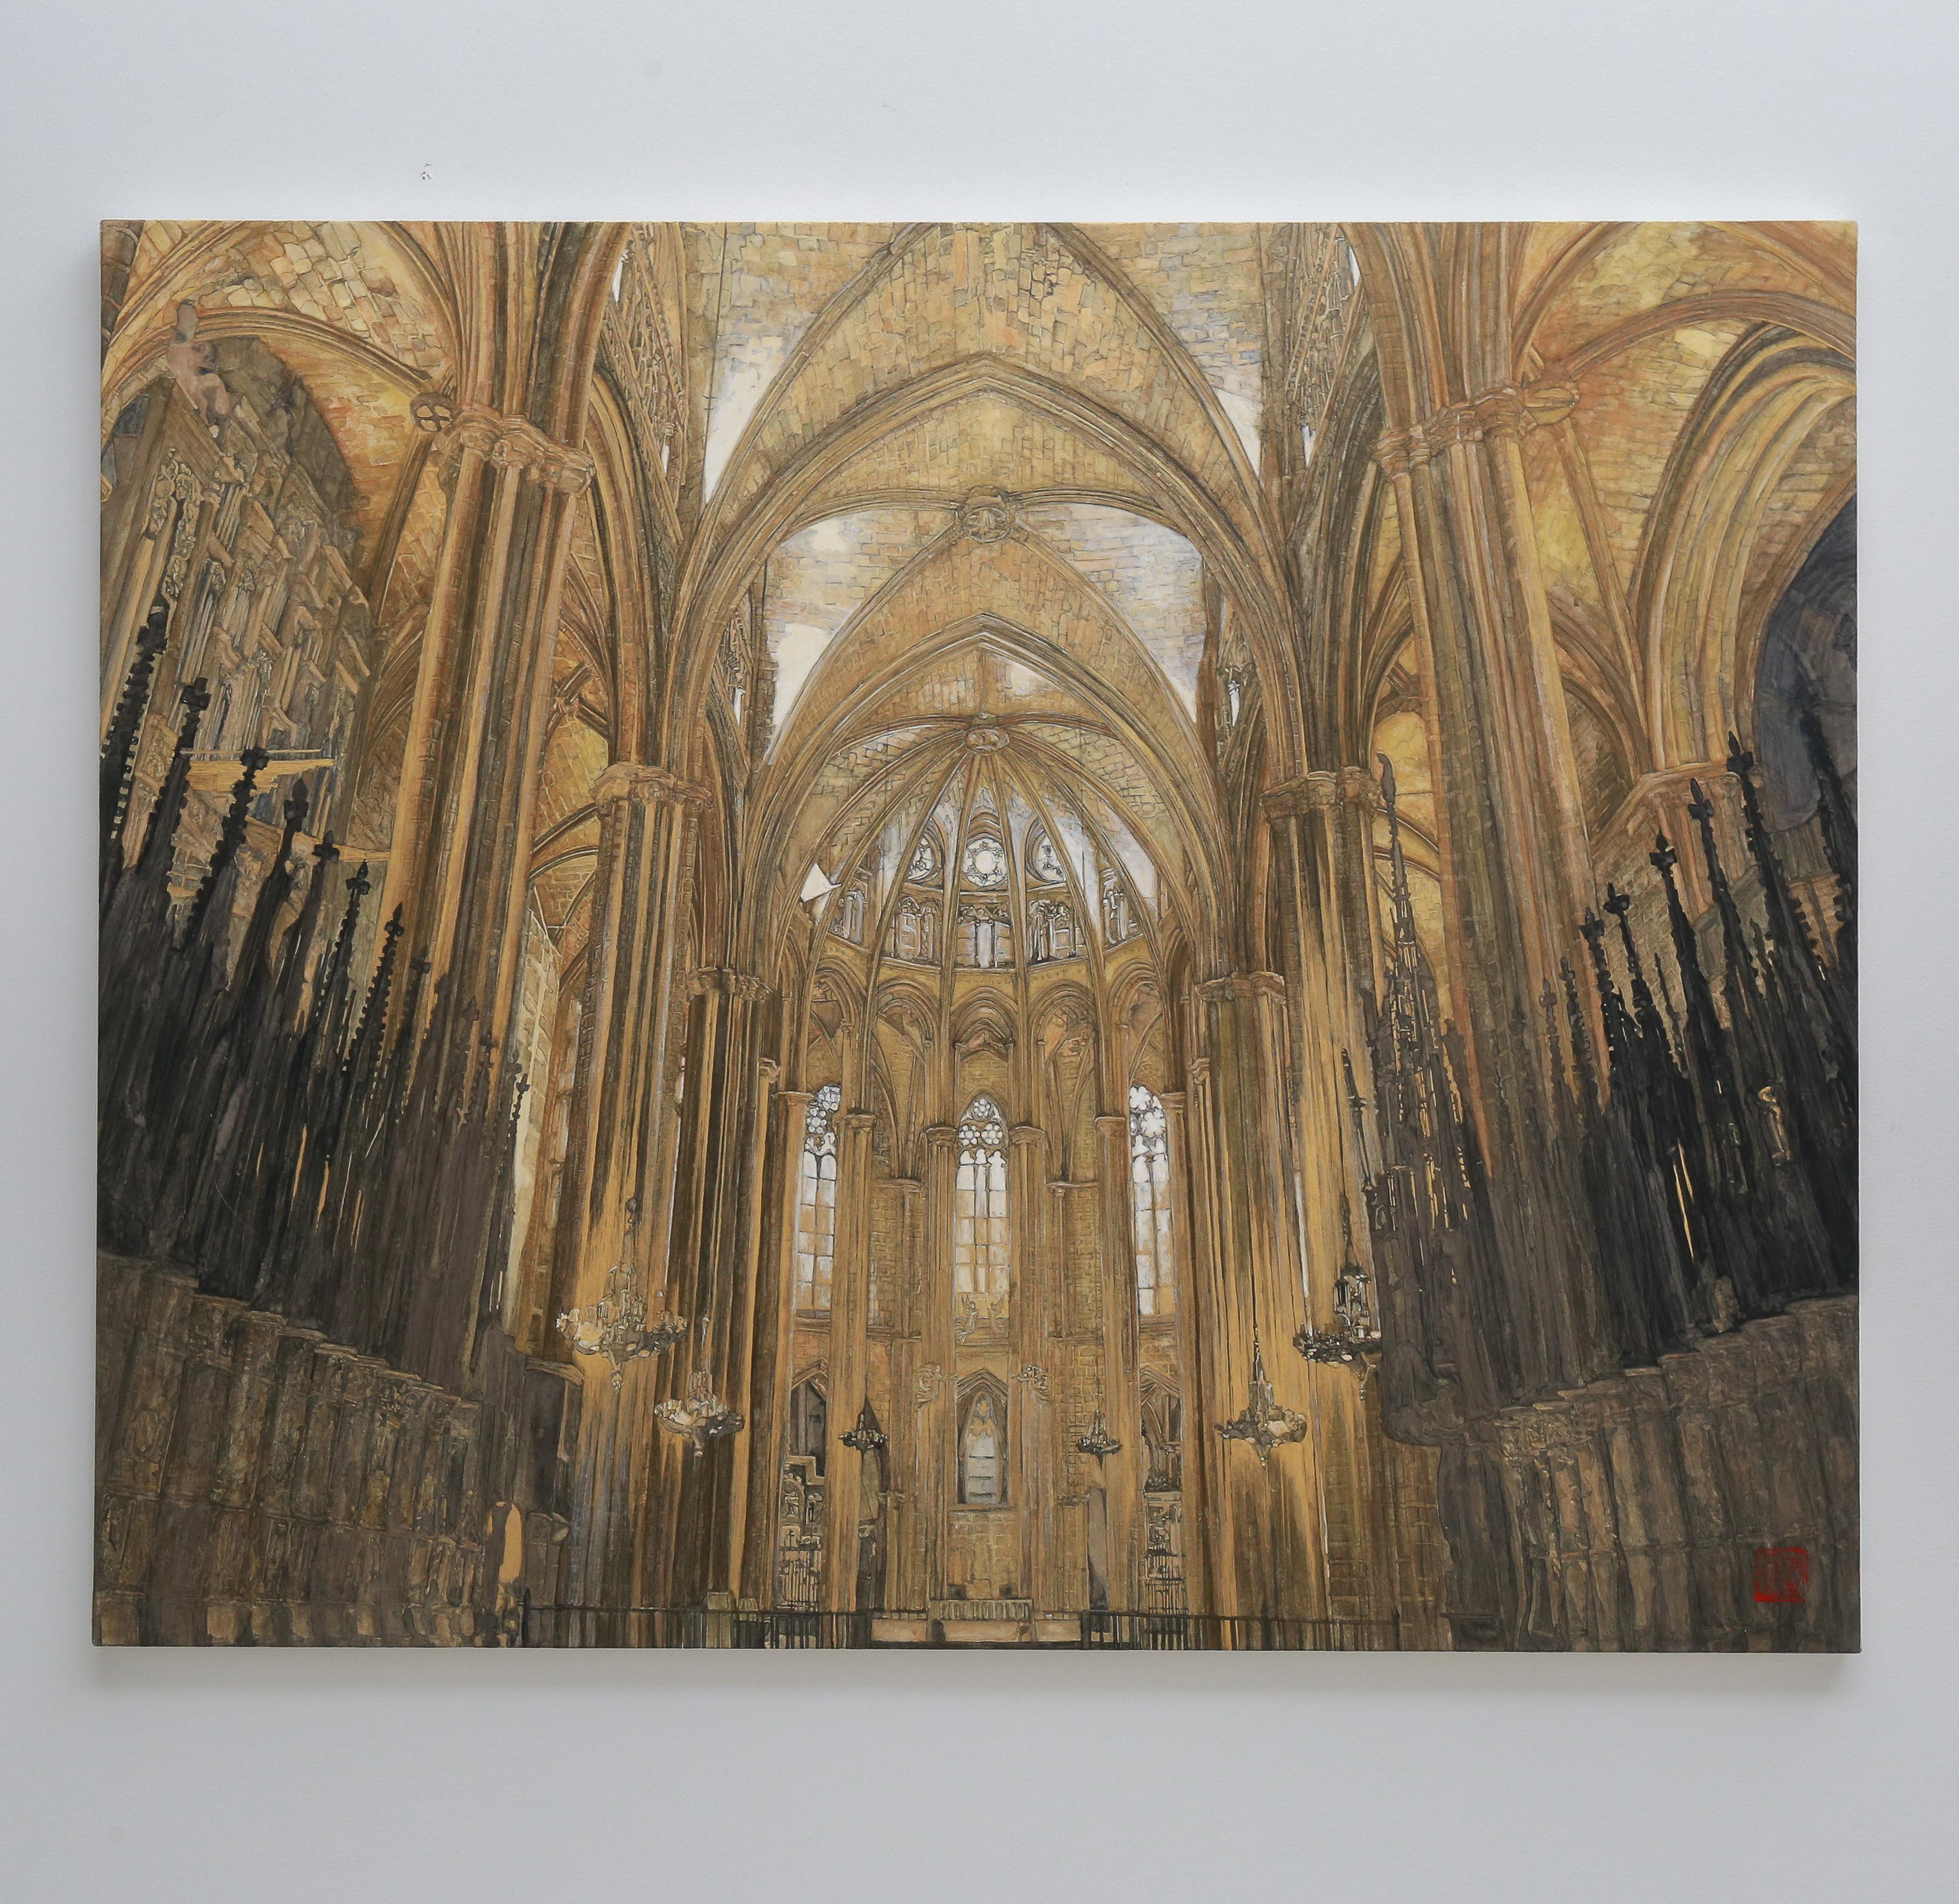 Barcelona- Kathedrale – 24 Karat Gold und Mineralien, Architektur, Gotik, Realismus (Zeitgenössisch), Painting, von Maria Mitsumori